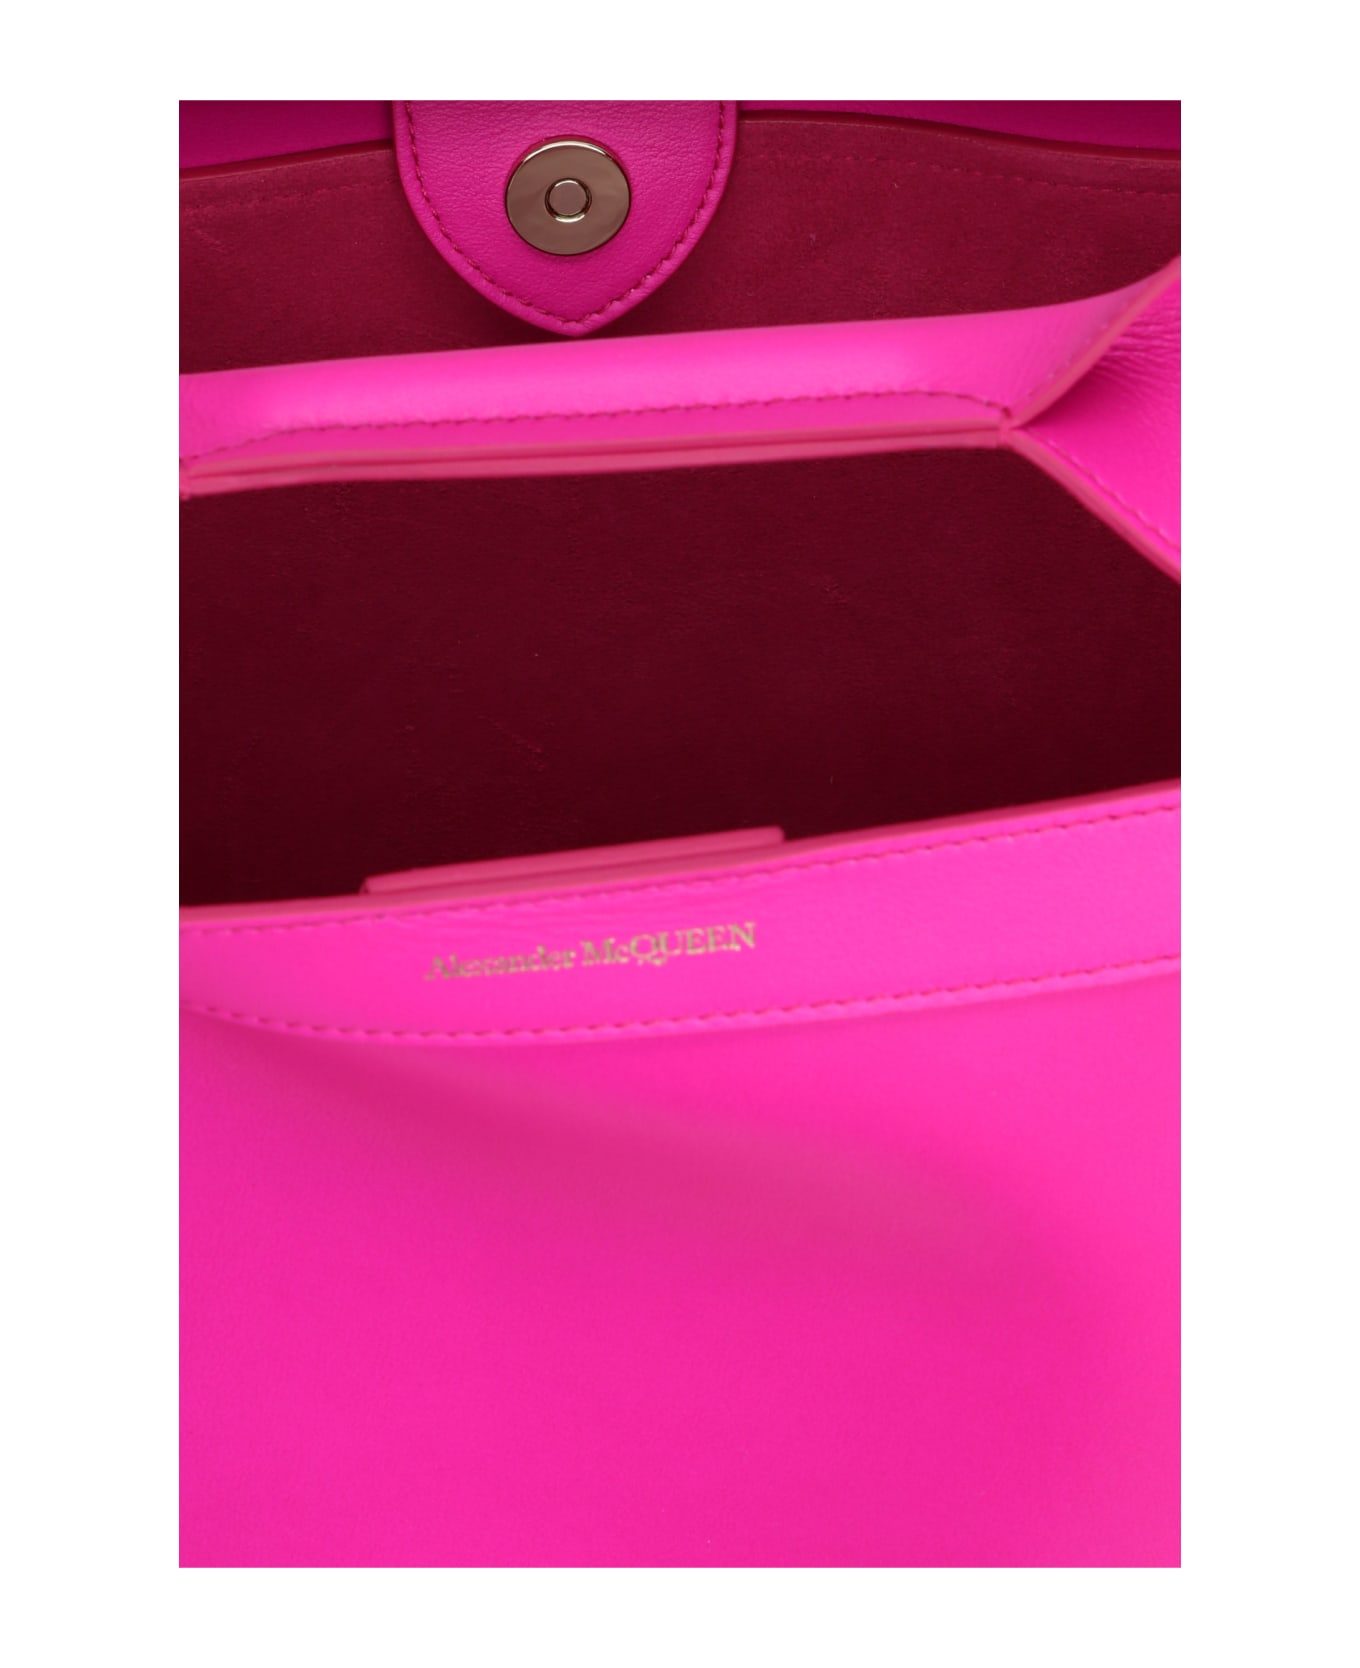 Alexander McQueen 'the Bow' Small Handbag - Pink トートバッグ